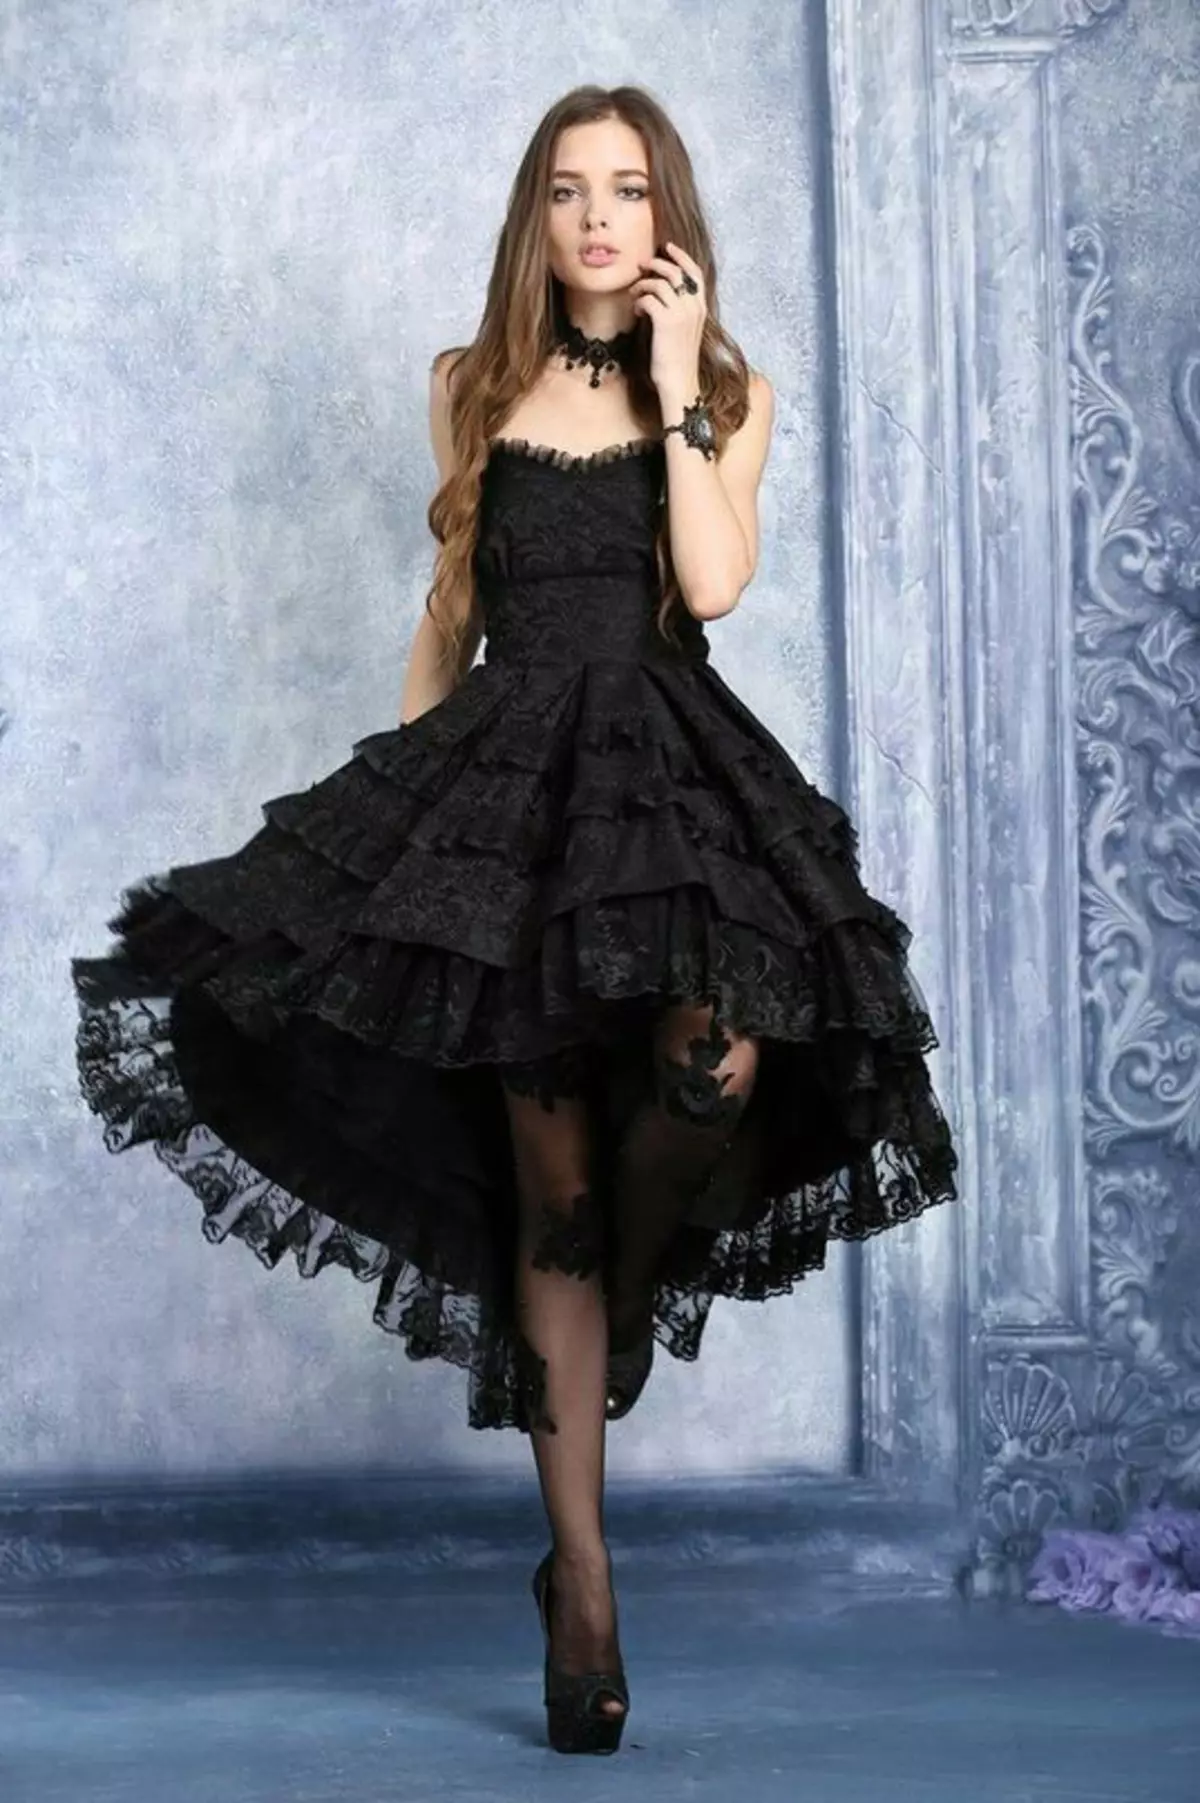 Gooti kleidid: Lolita stiilis, mustad pulmakleidid ja lühikese korsetiga lõpetamisel. Ilus näited õhtuse varustus 819_28